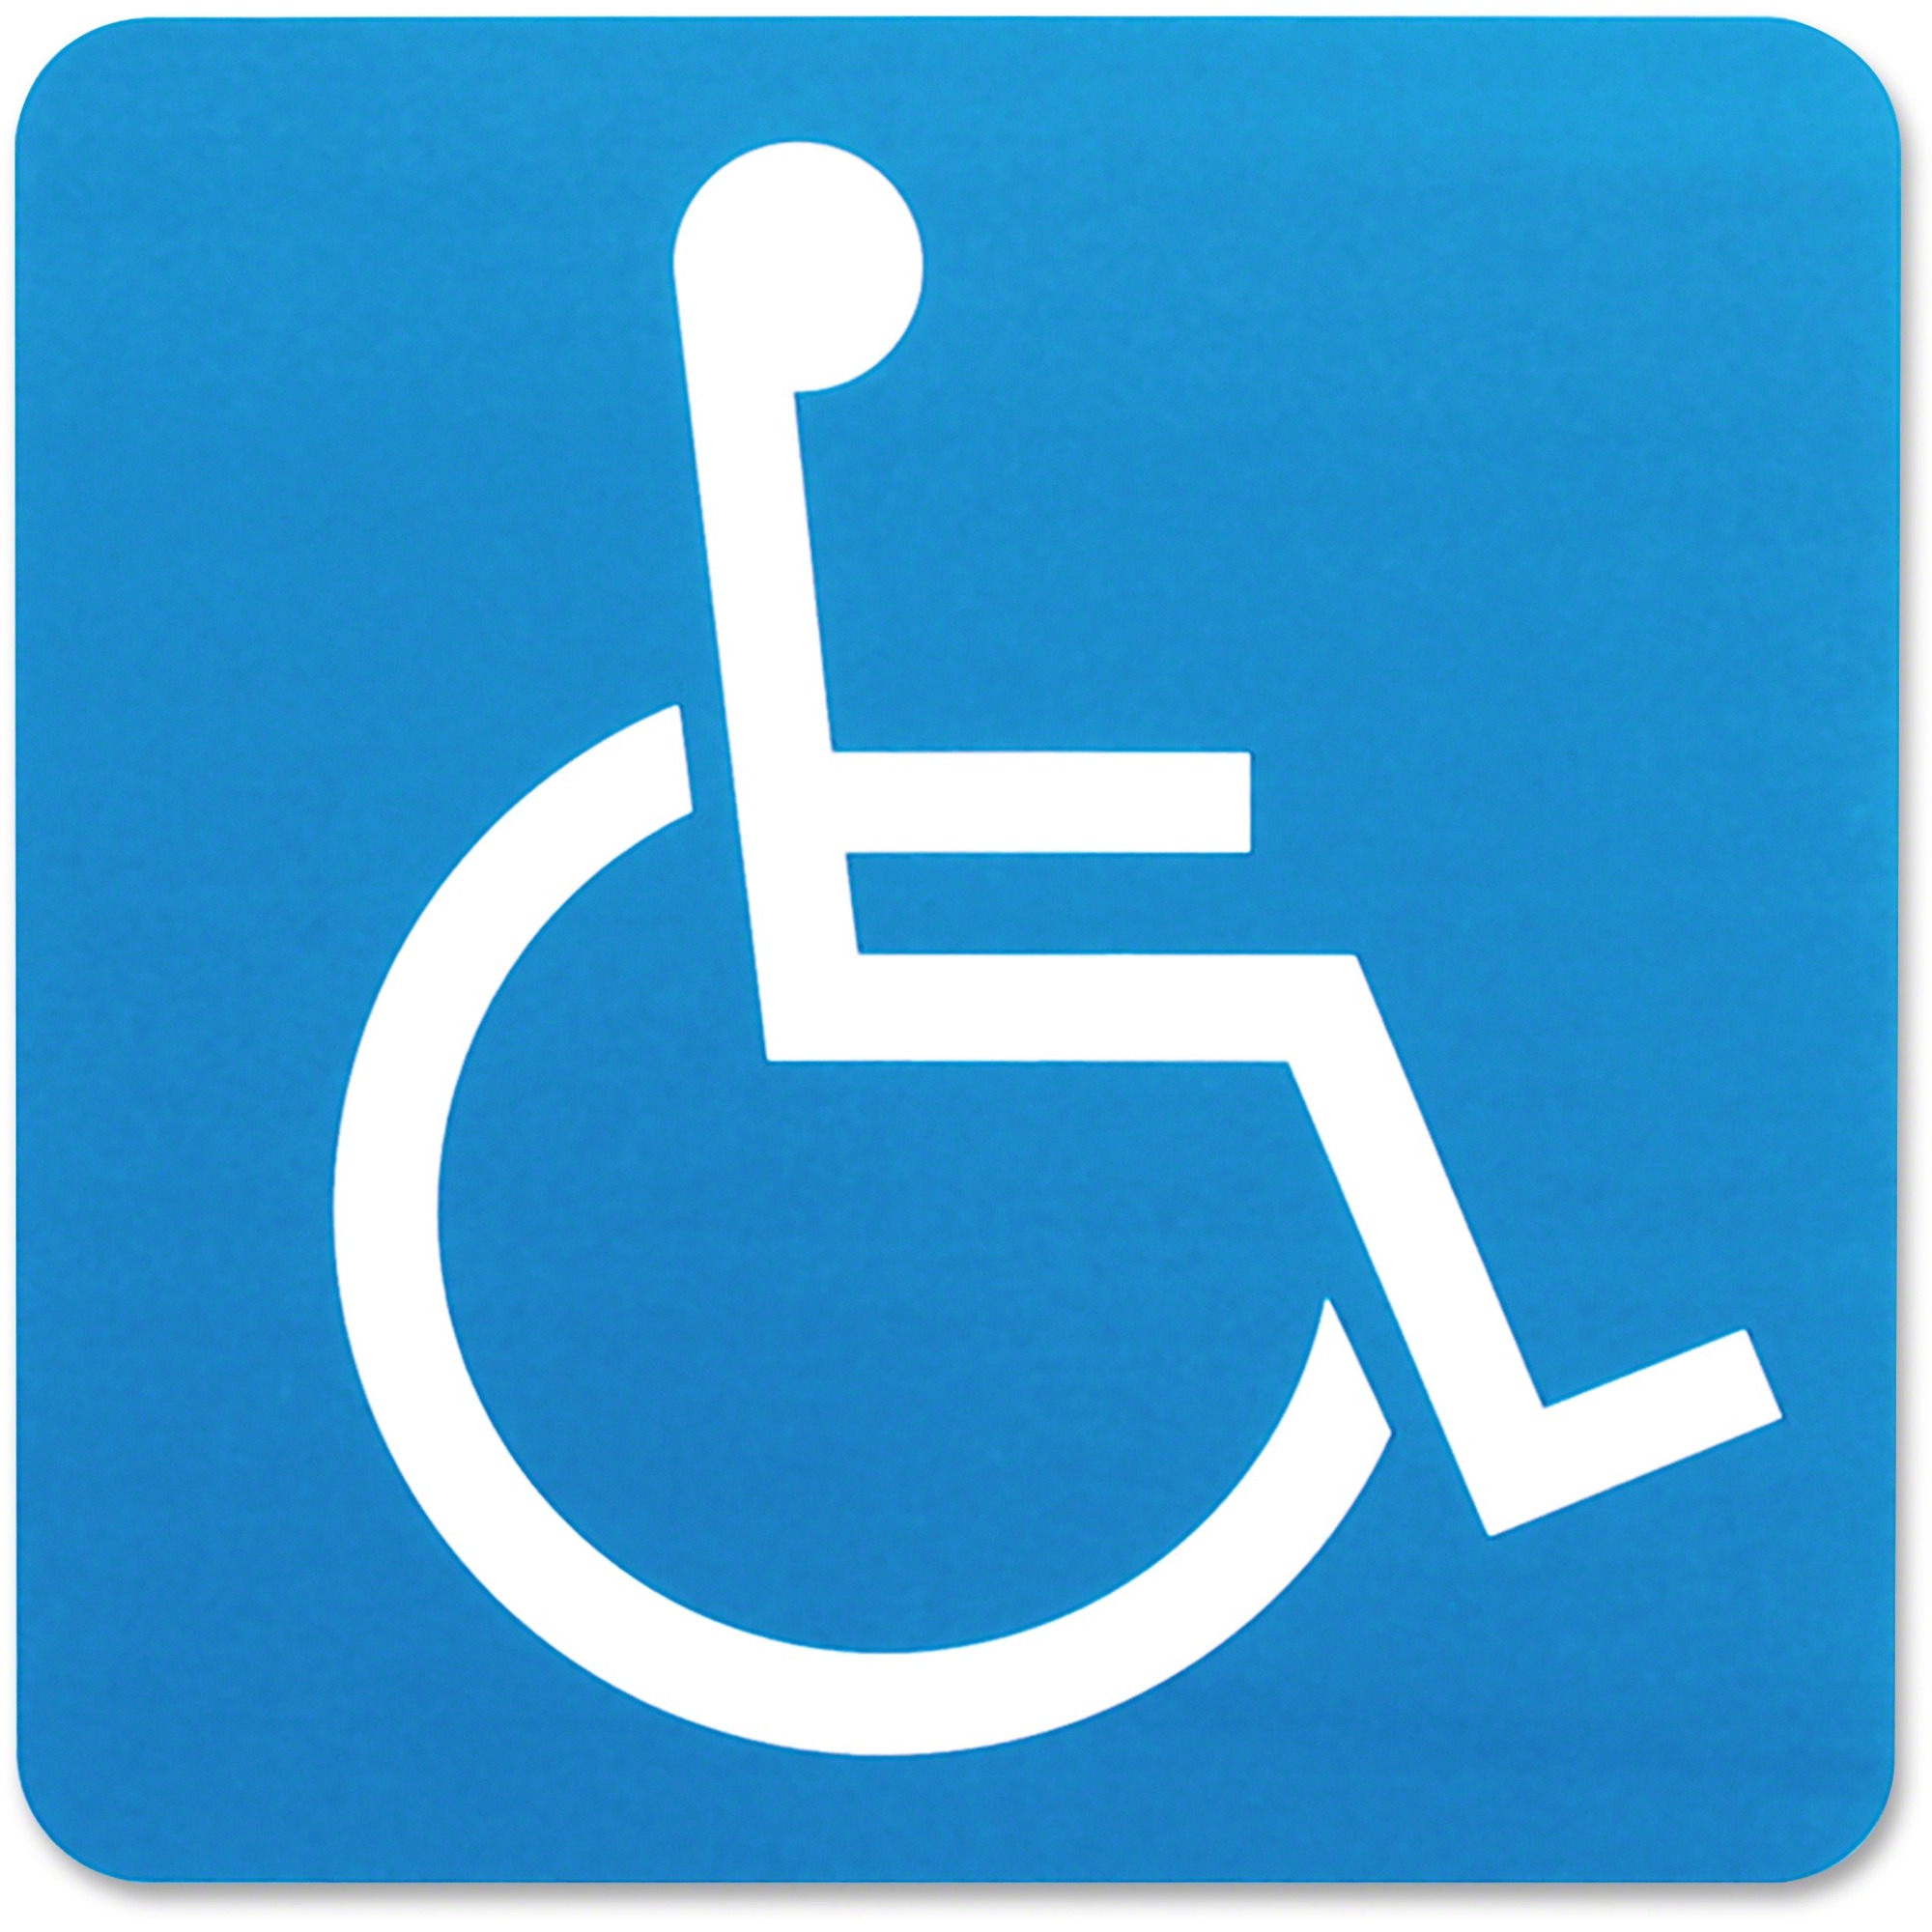 handicap wheelchair